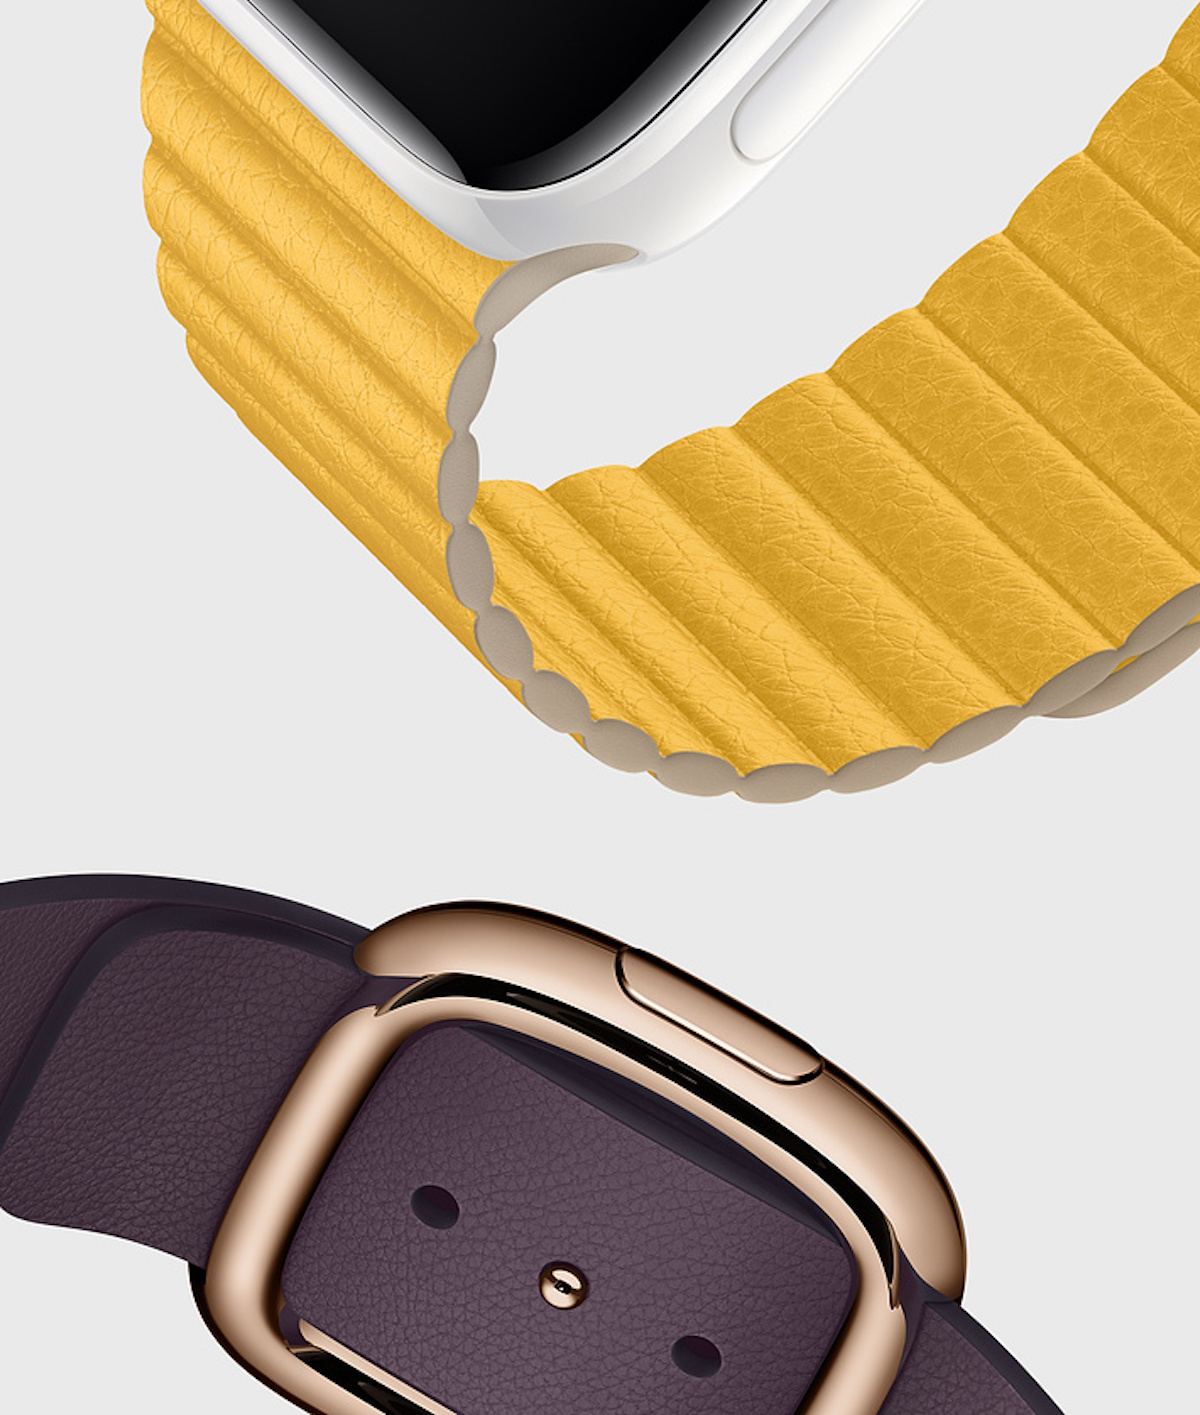 I magneti nei cinturini possono interferire con la bussola di Apple Watch Serie 5